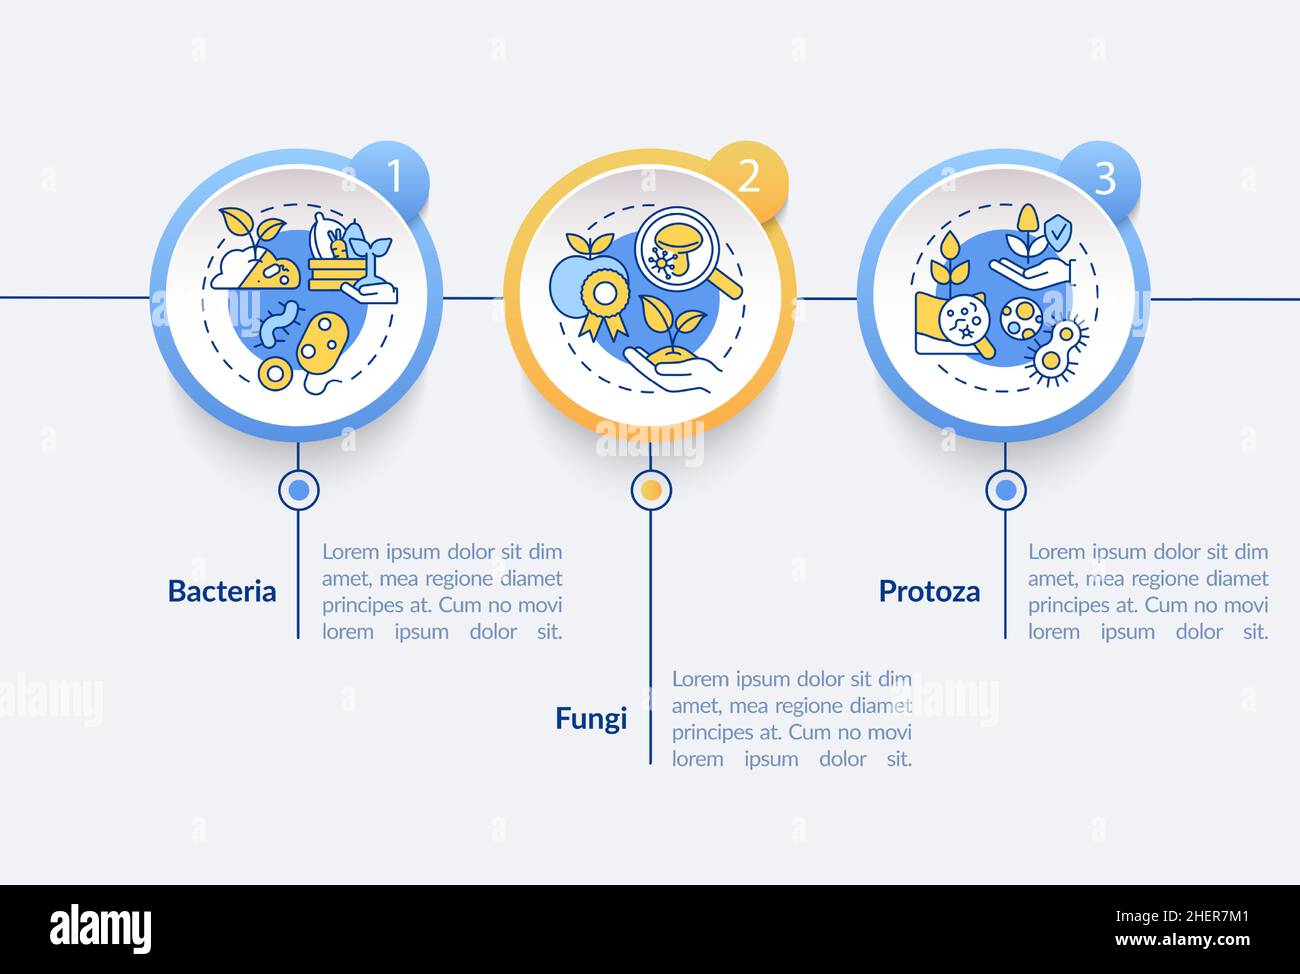 Plantilla infográfica de microorganismos en el círculo agrícola Ilustración del Vector